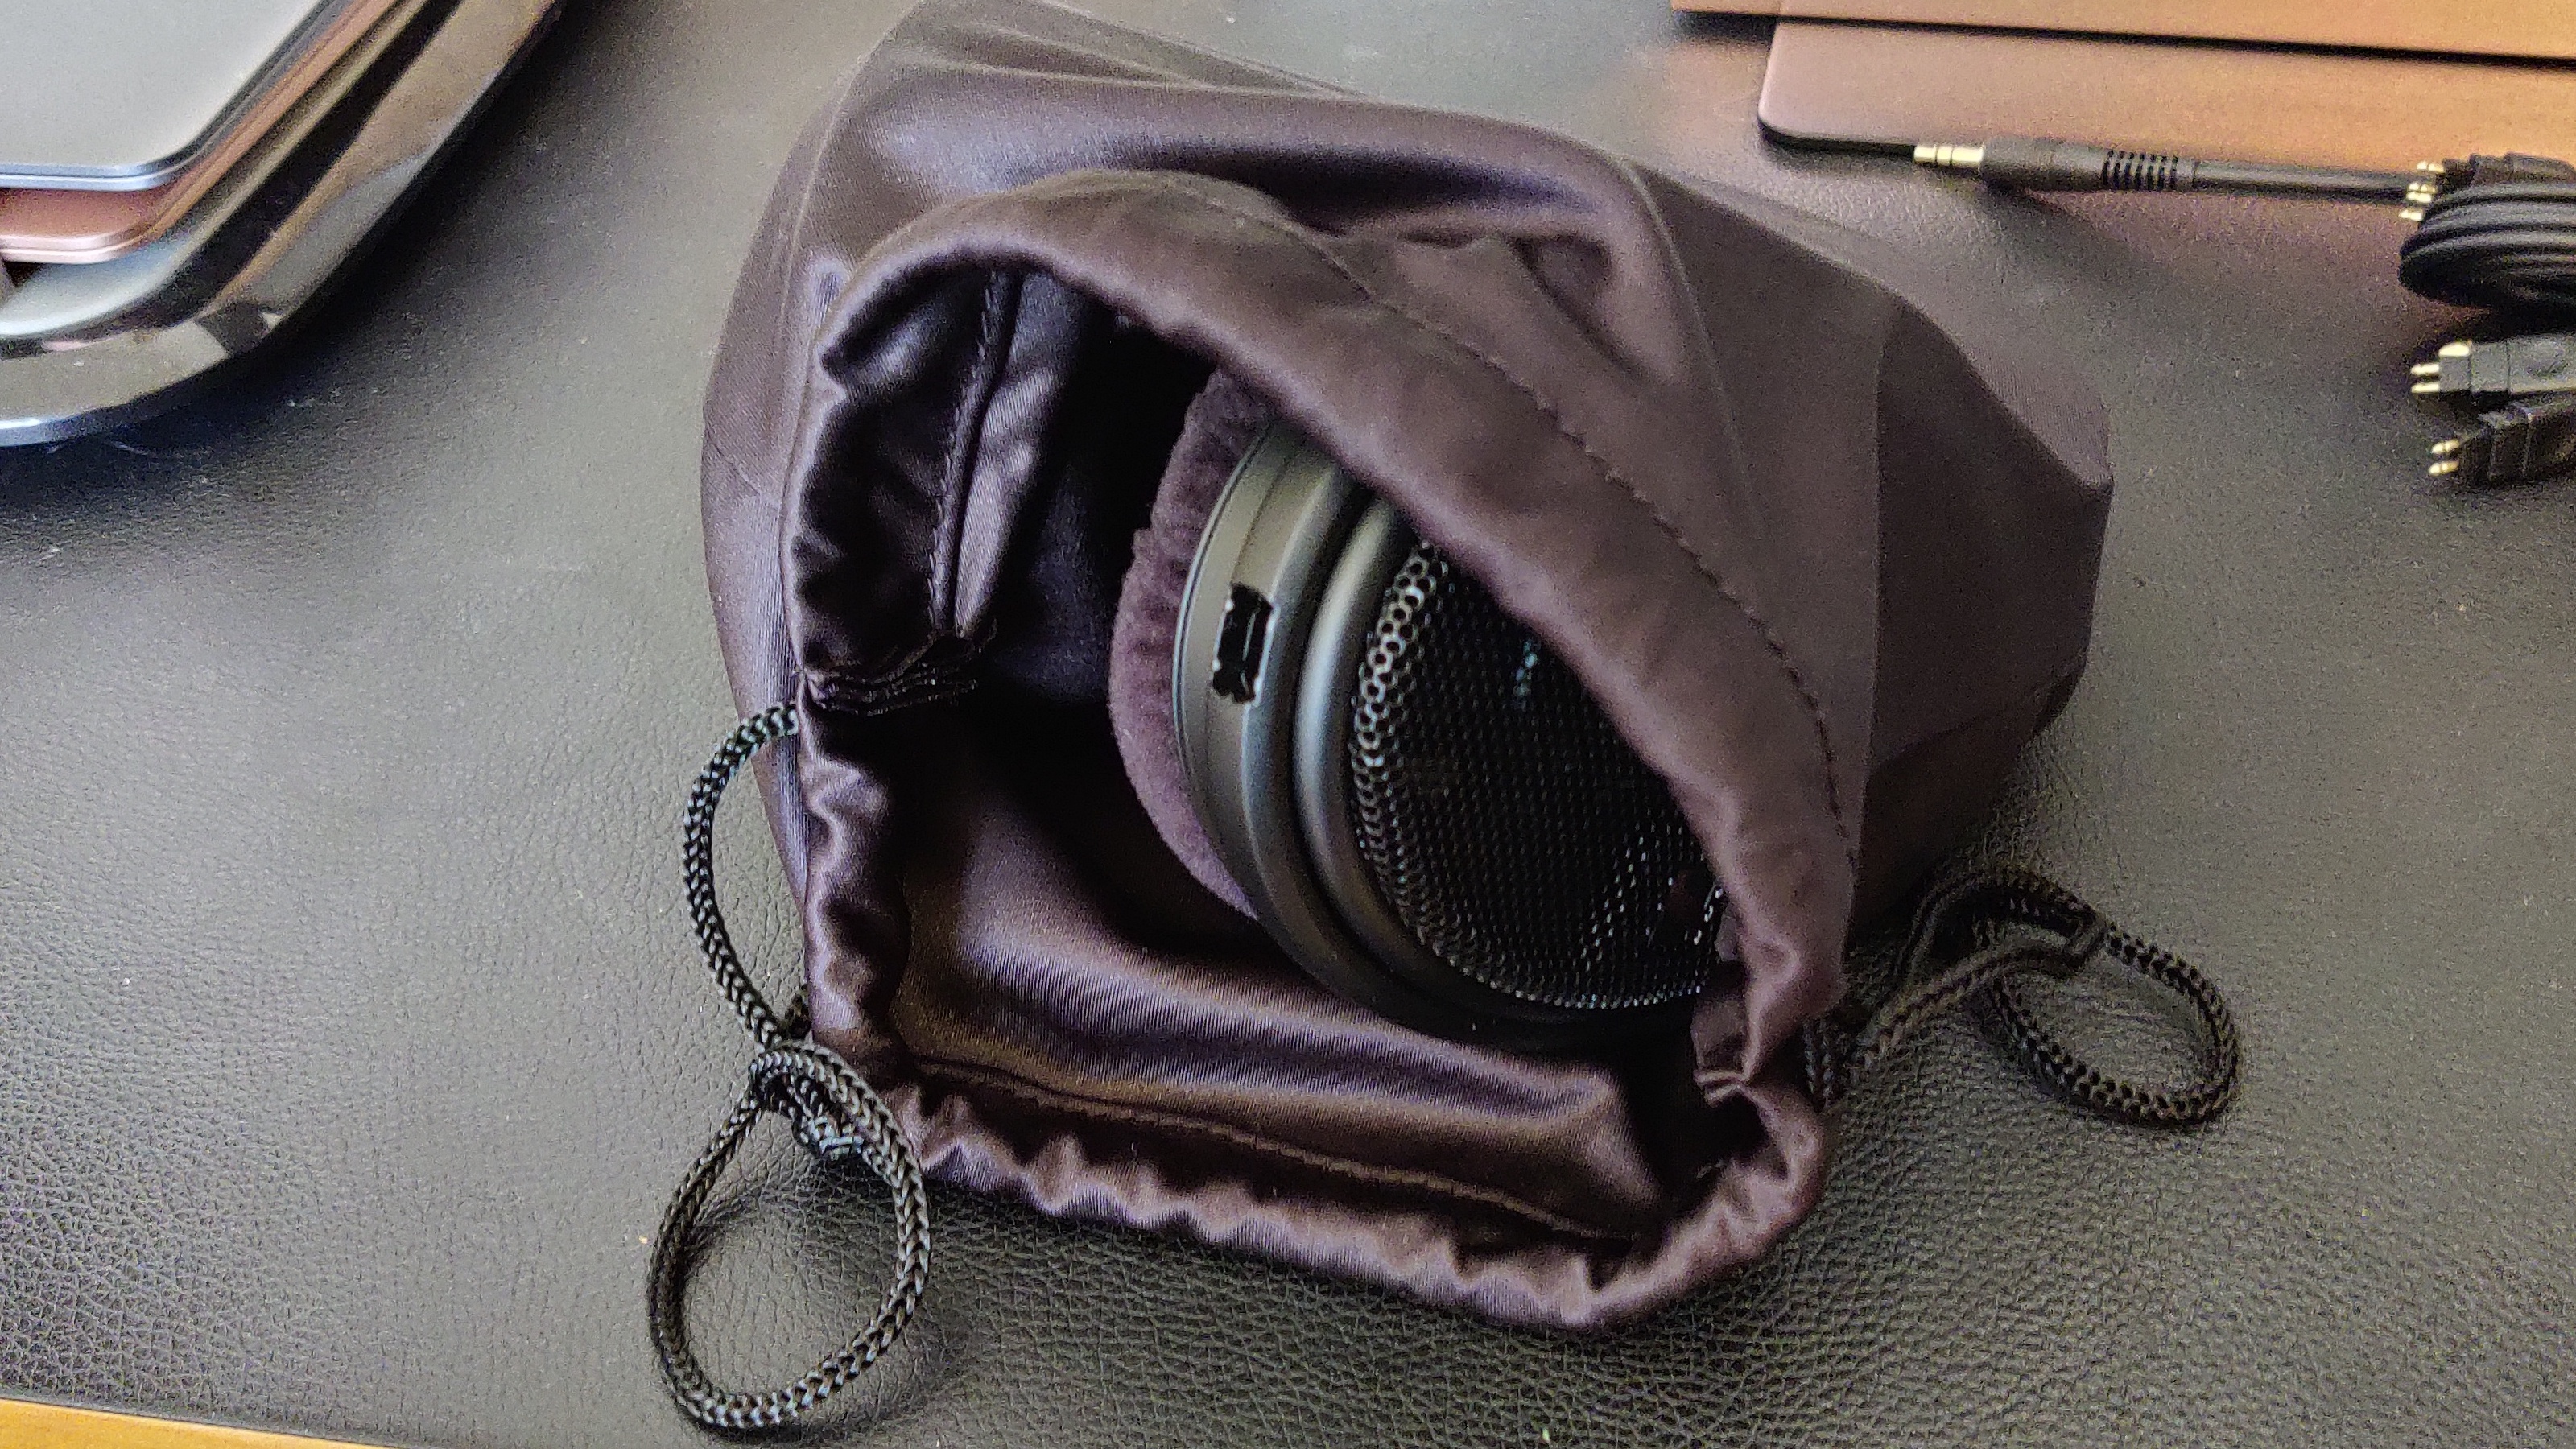 The Sennheiser HD-660S2 over-ear headphones in a small bag.